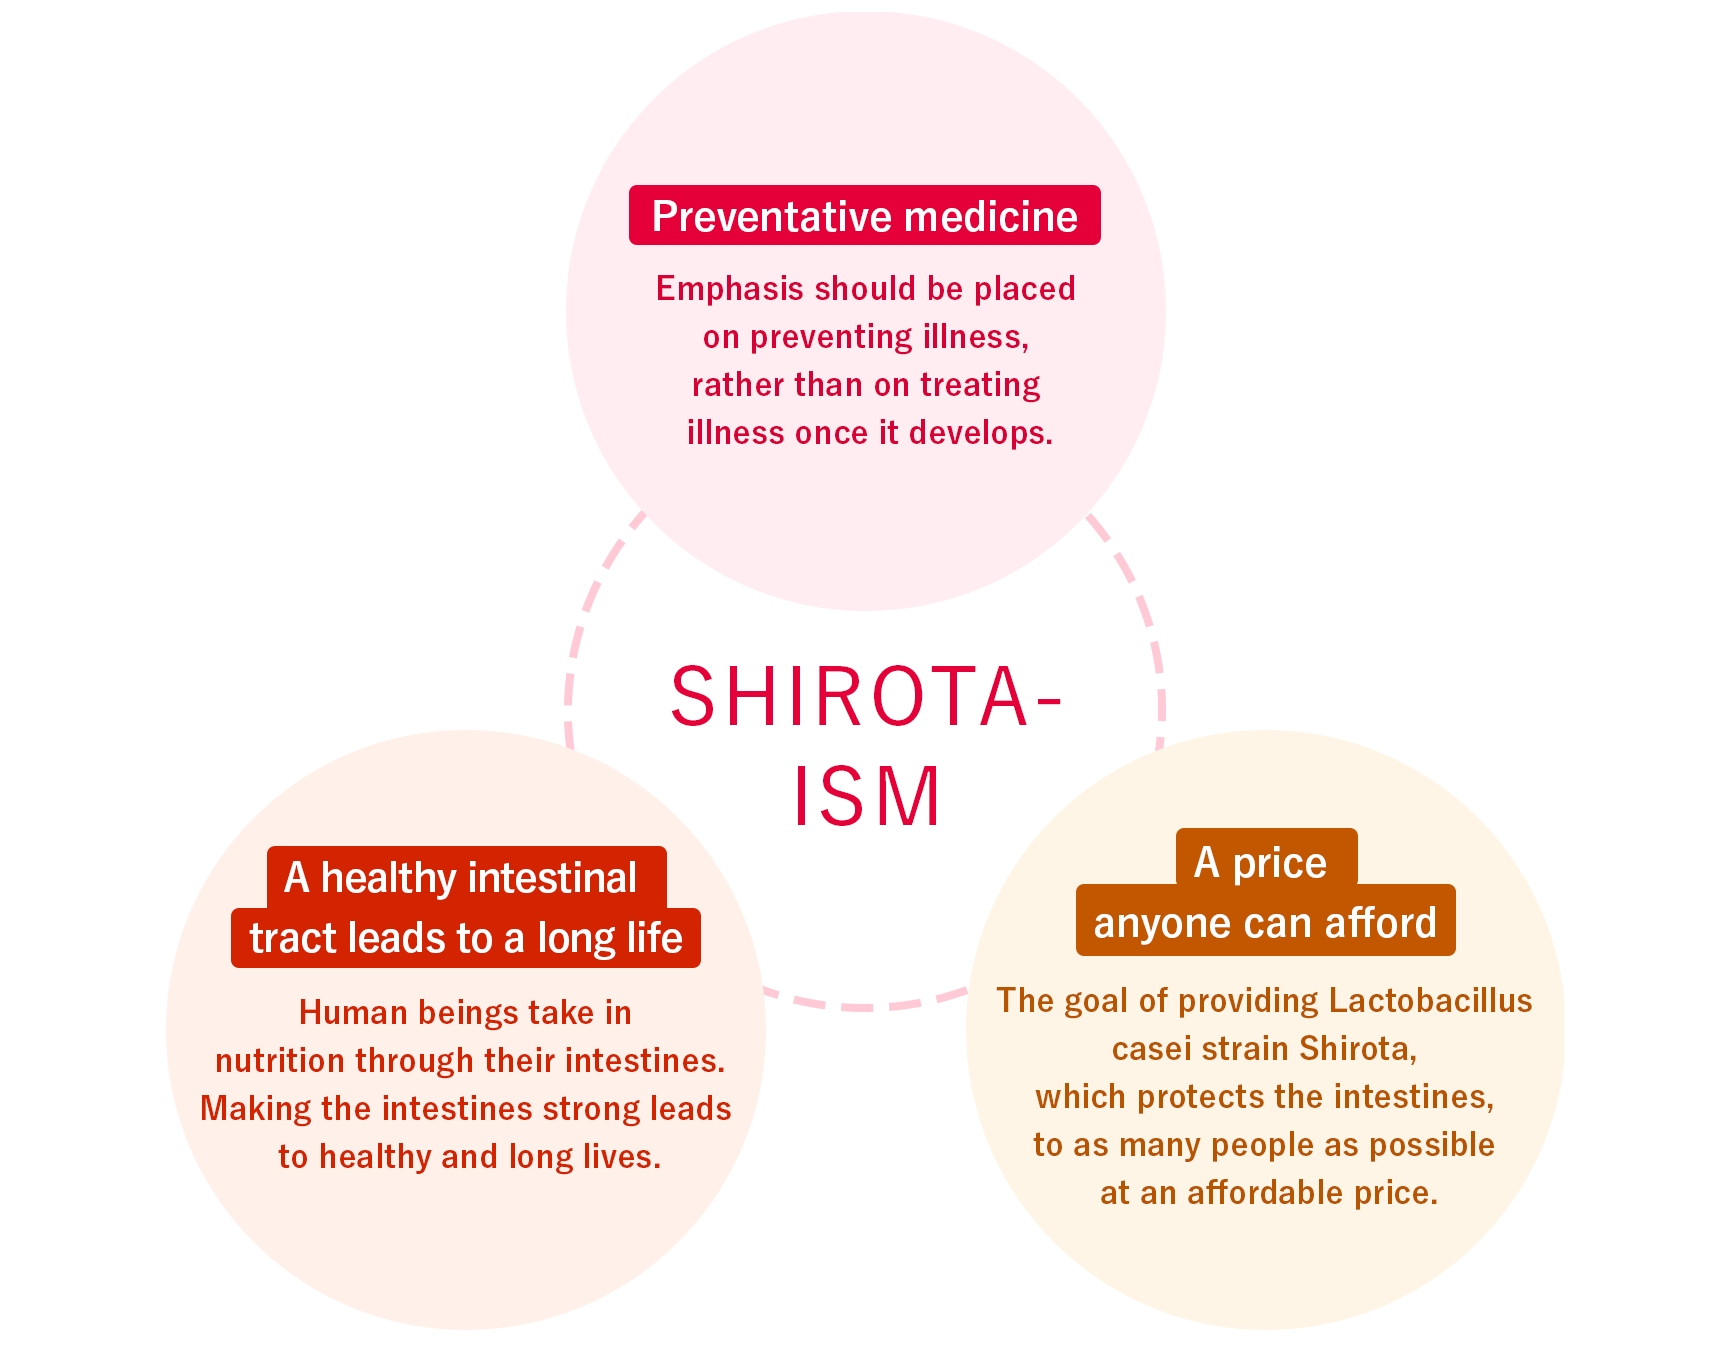 Shirota-ism